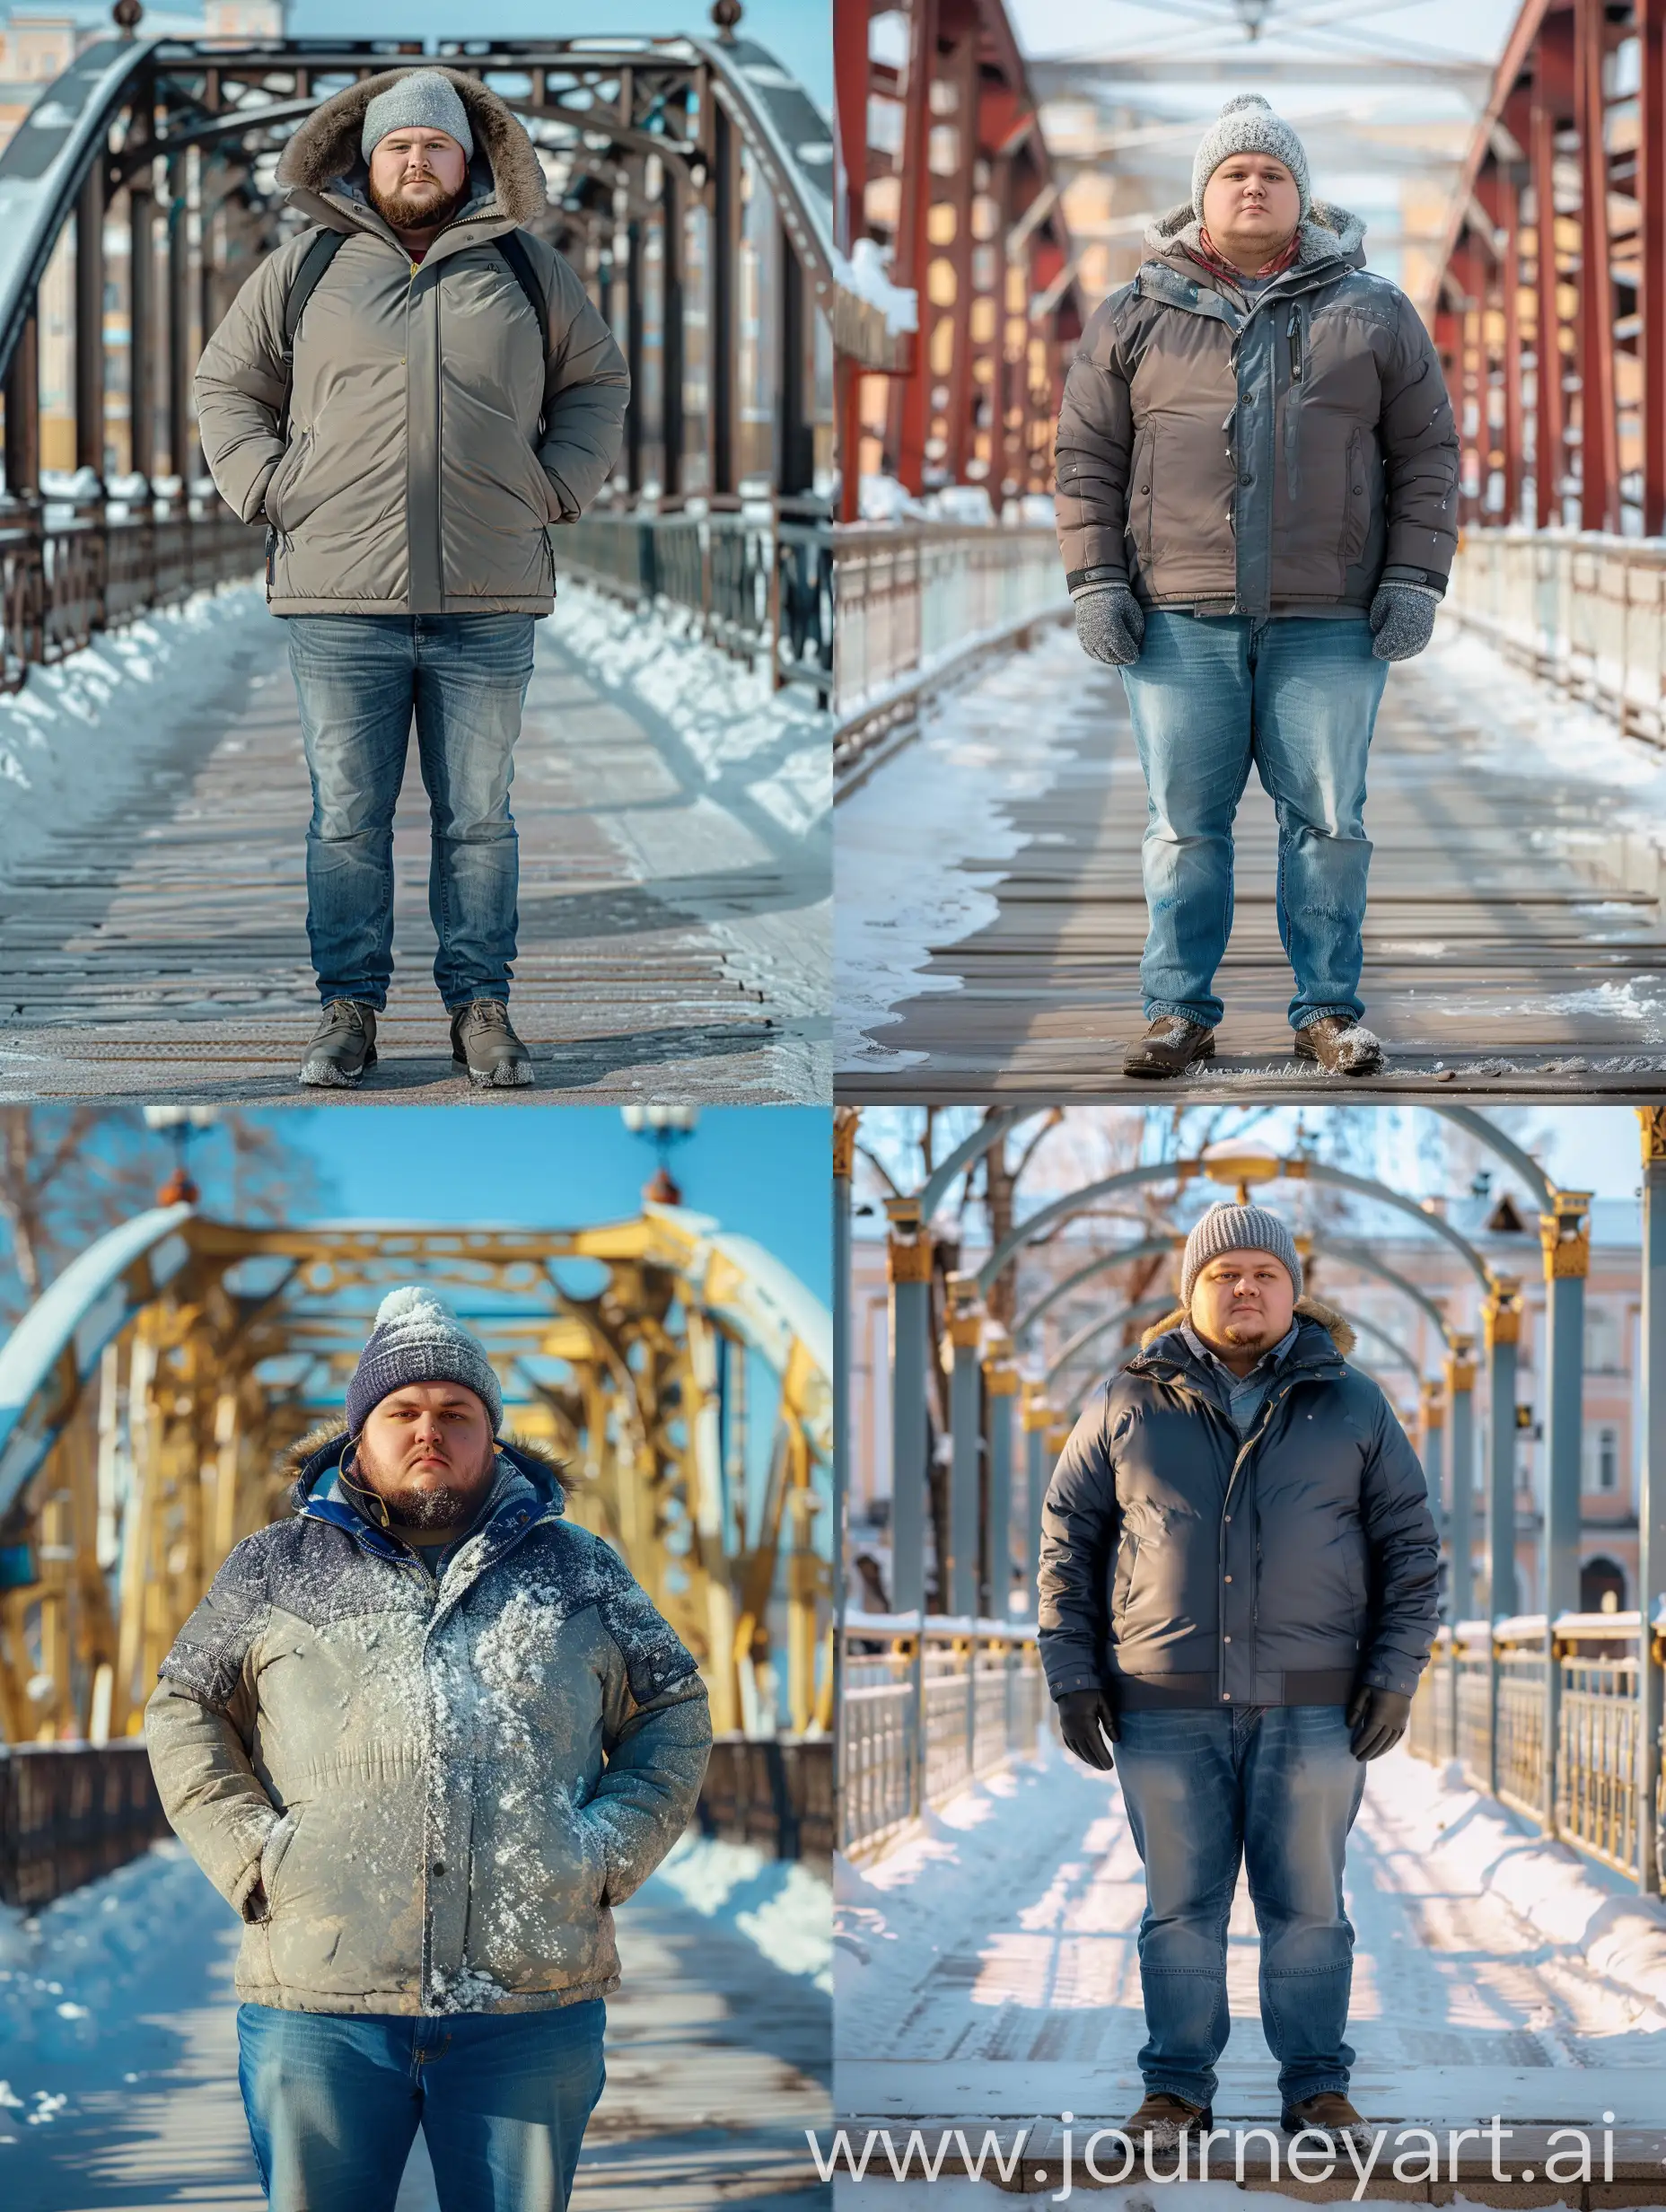 Potret seorang pria berumur 26 tahun berbadan agak gemuk, mengenakan jaket musim dingin, topi salju, celana jeans. Menghadap depan. Berdiri diatas jembatan indah. Musim salju. Foto asli. Sangat detail. 8K HD. leica kamera.